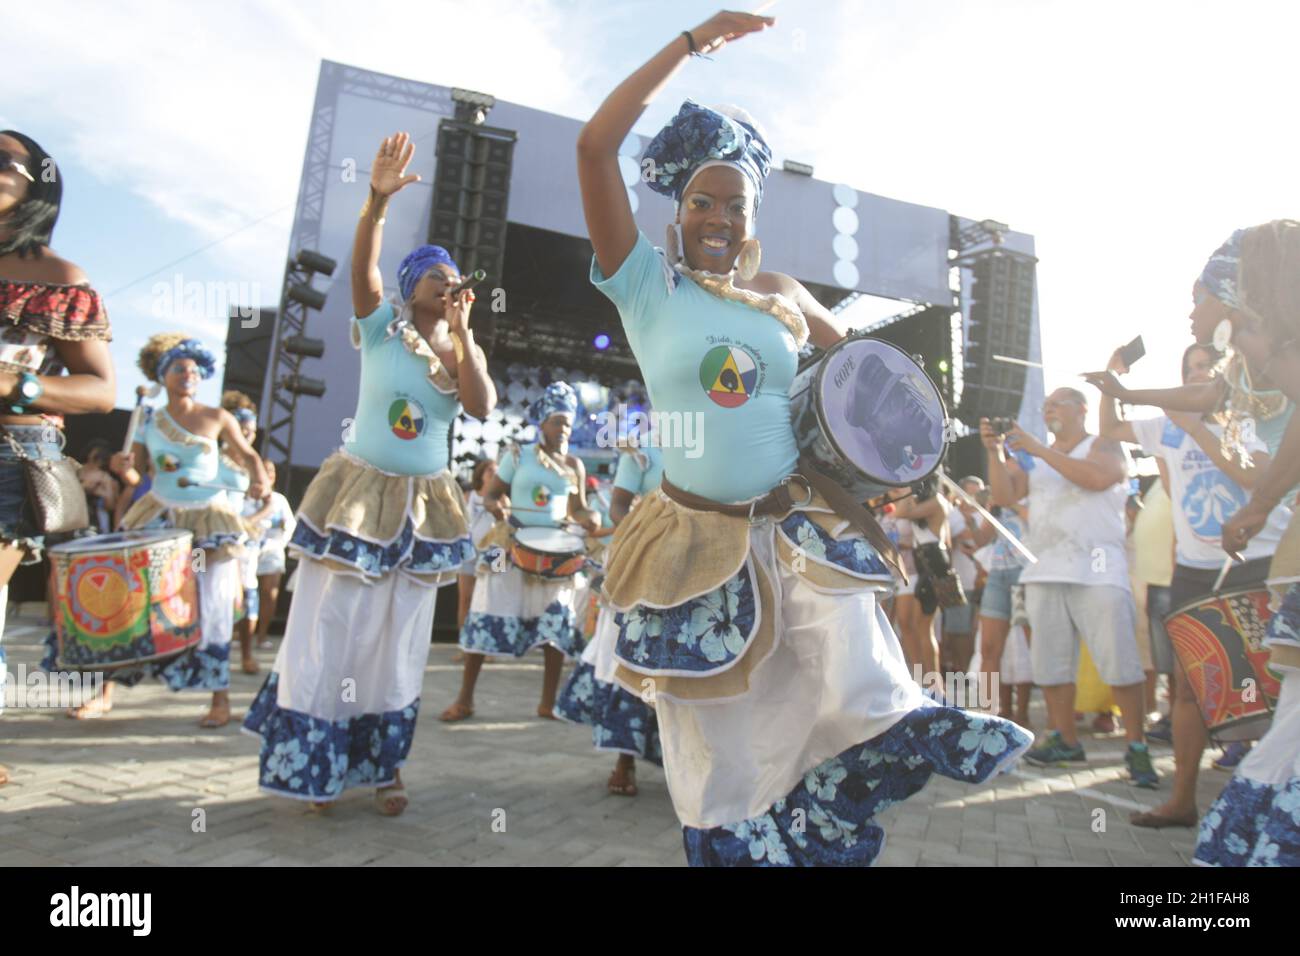 salvador, bahia / brésil - 2 février 2017: Membres de la bande de Dida, percussionnistes sont formés par des femmes, vus pendant la représentation dans la ville de Salvador. * Banque D'Images